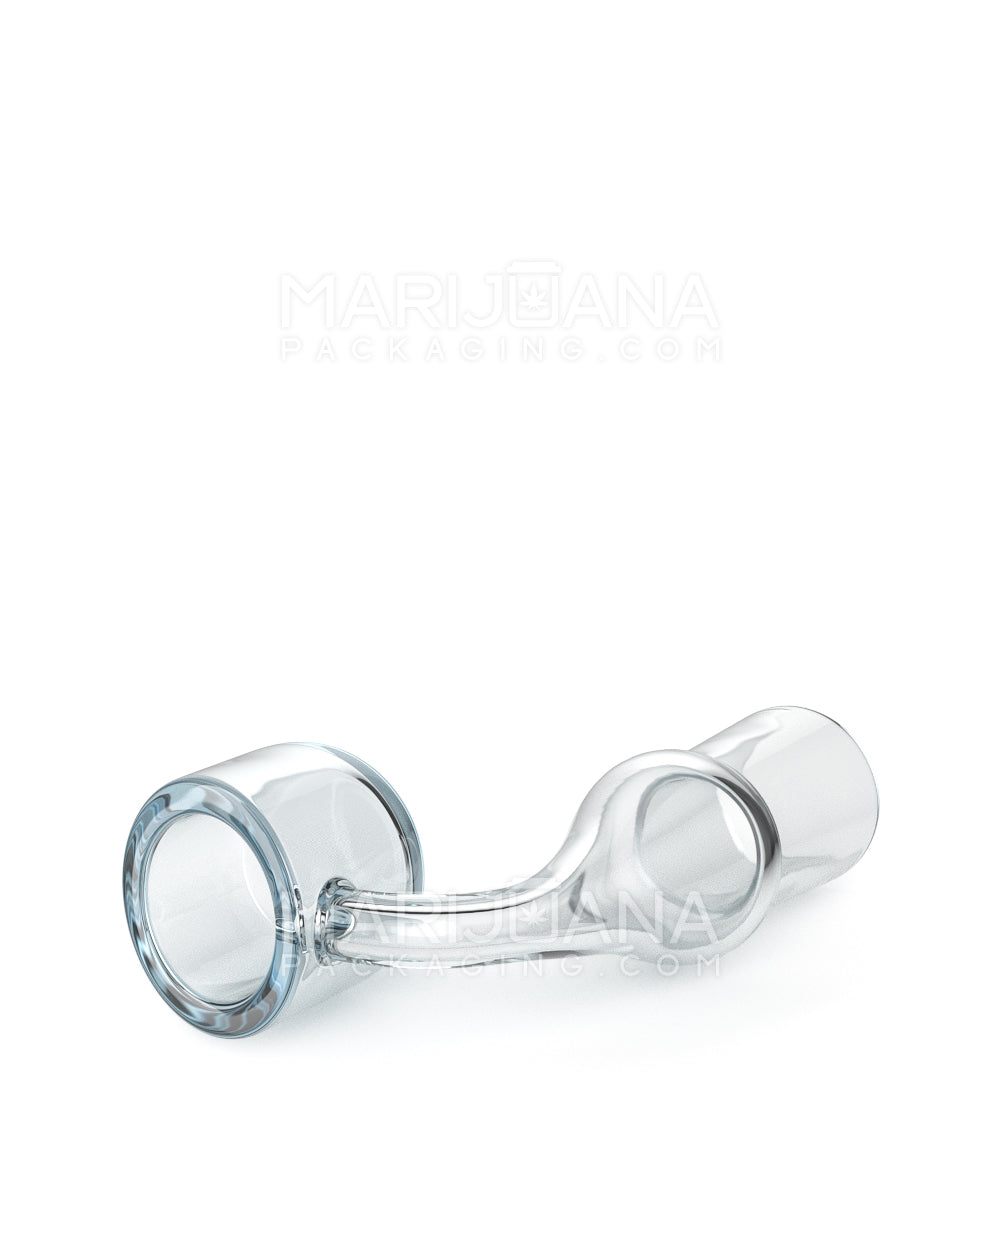 USA Glass | Thick 4mm Quartz Banger Nail | 14mm - 90 Degree - Female - 6